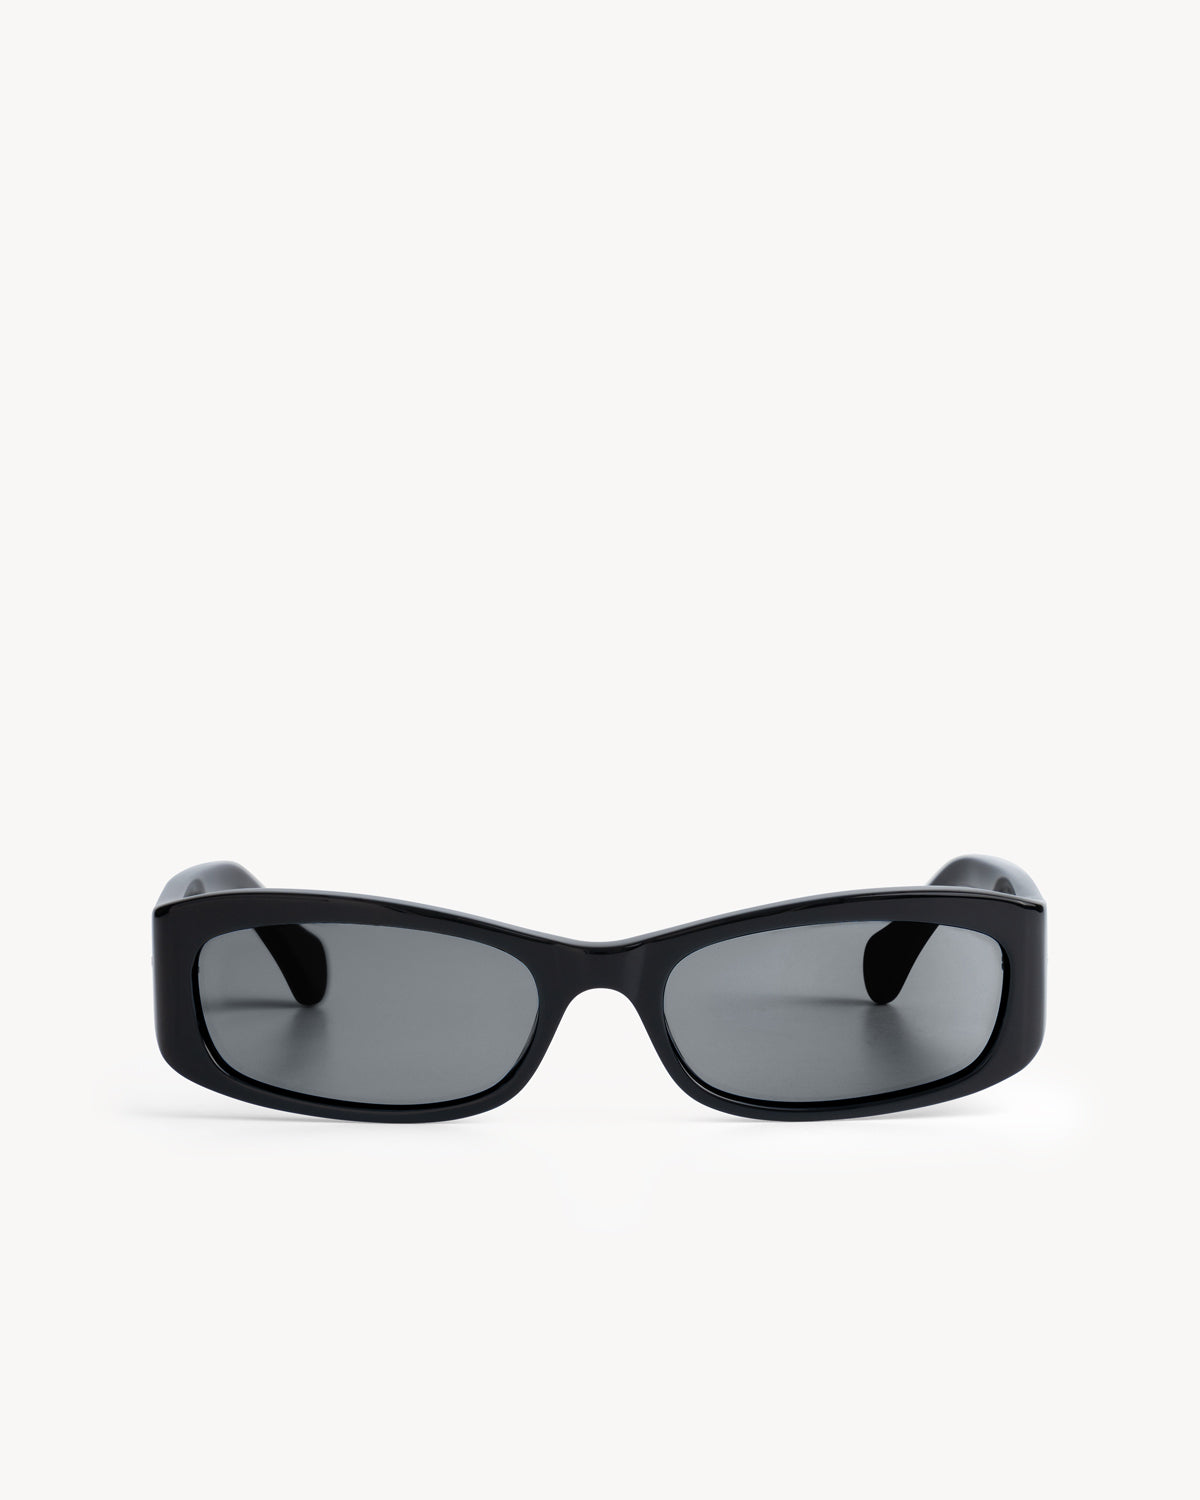 Port Tanger Leila Sunglasses in Black Acetate and Black Lenses 1